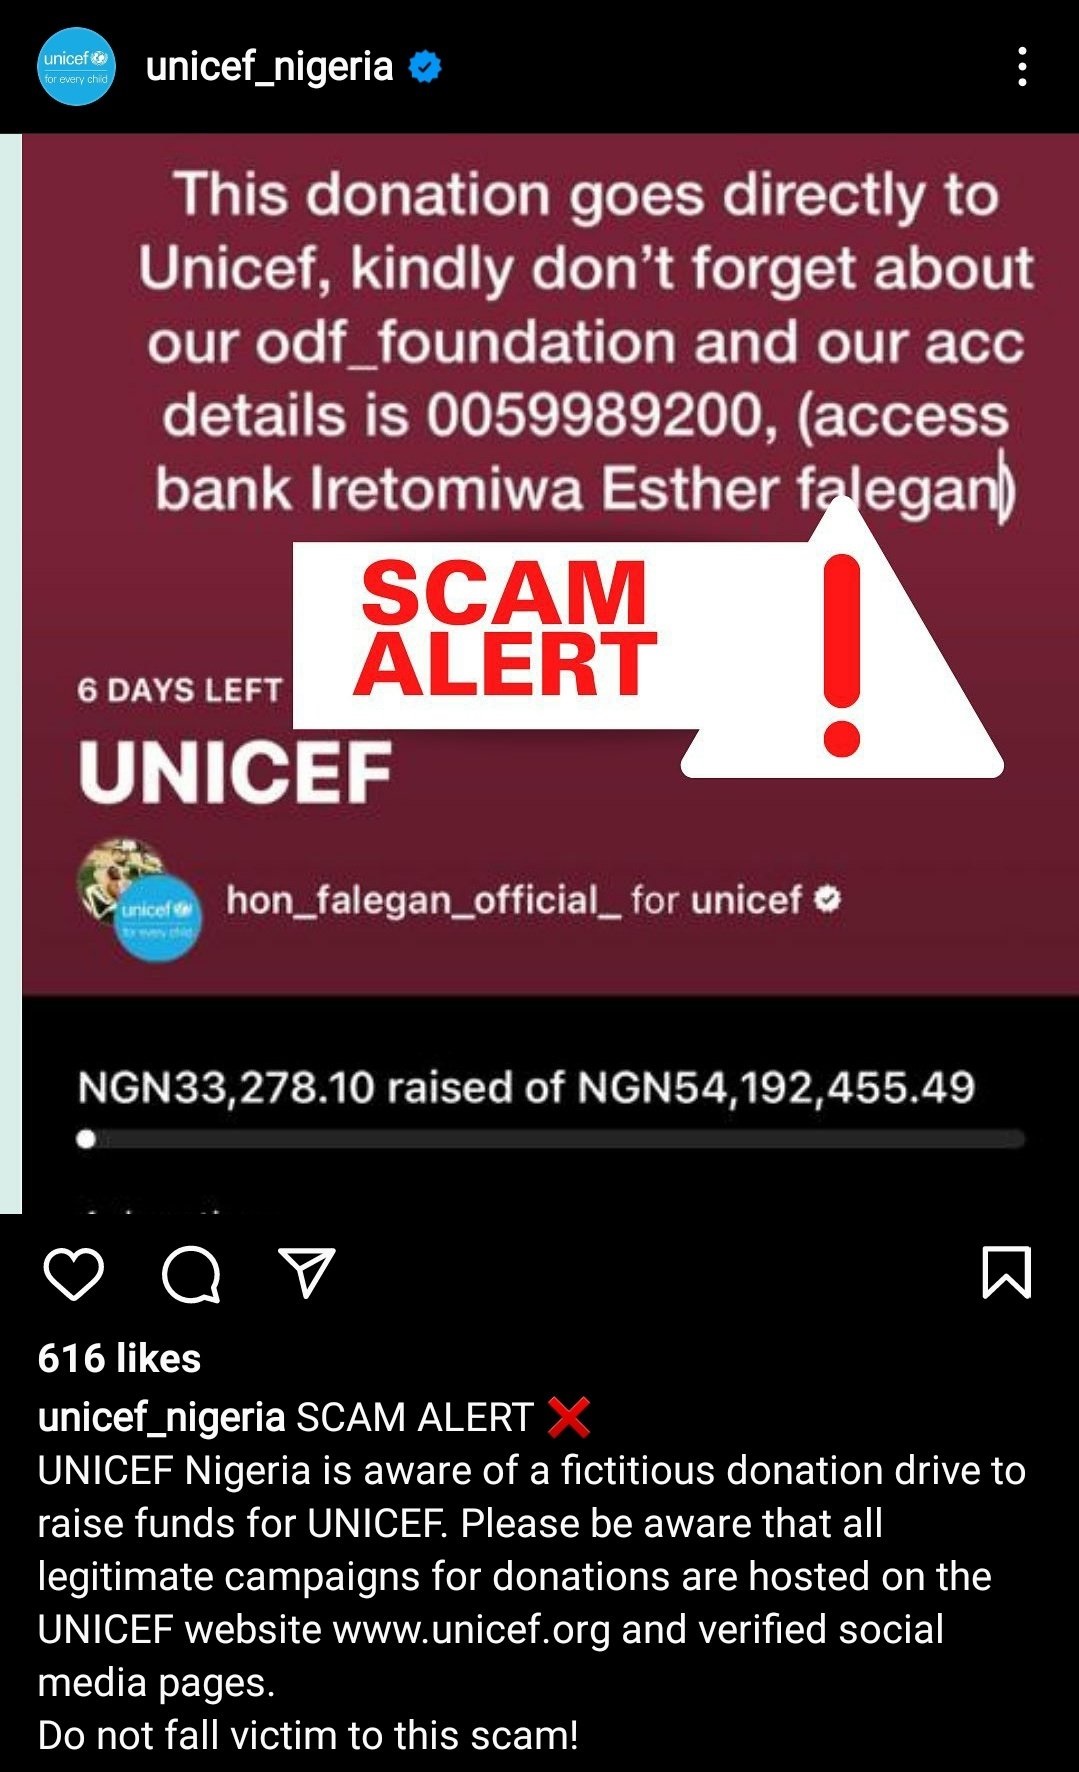 UNICEF Nigeria calls